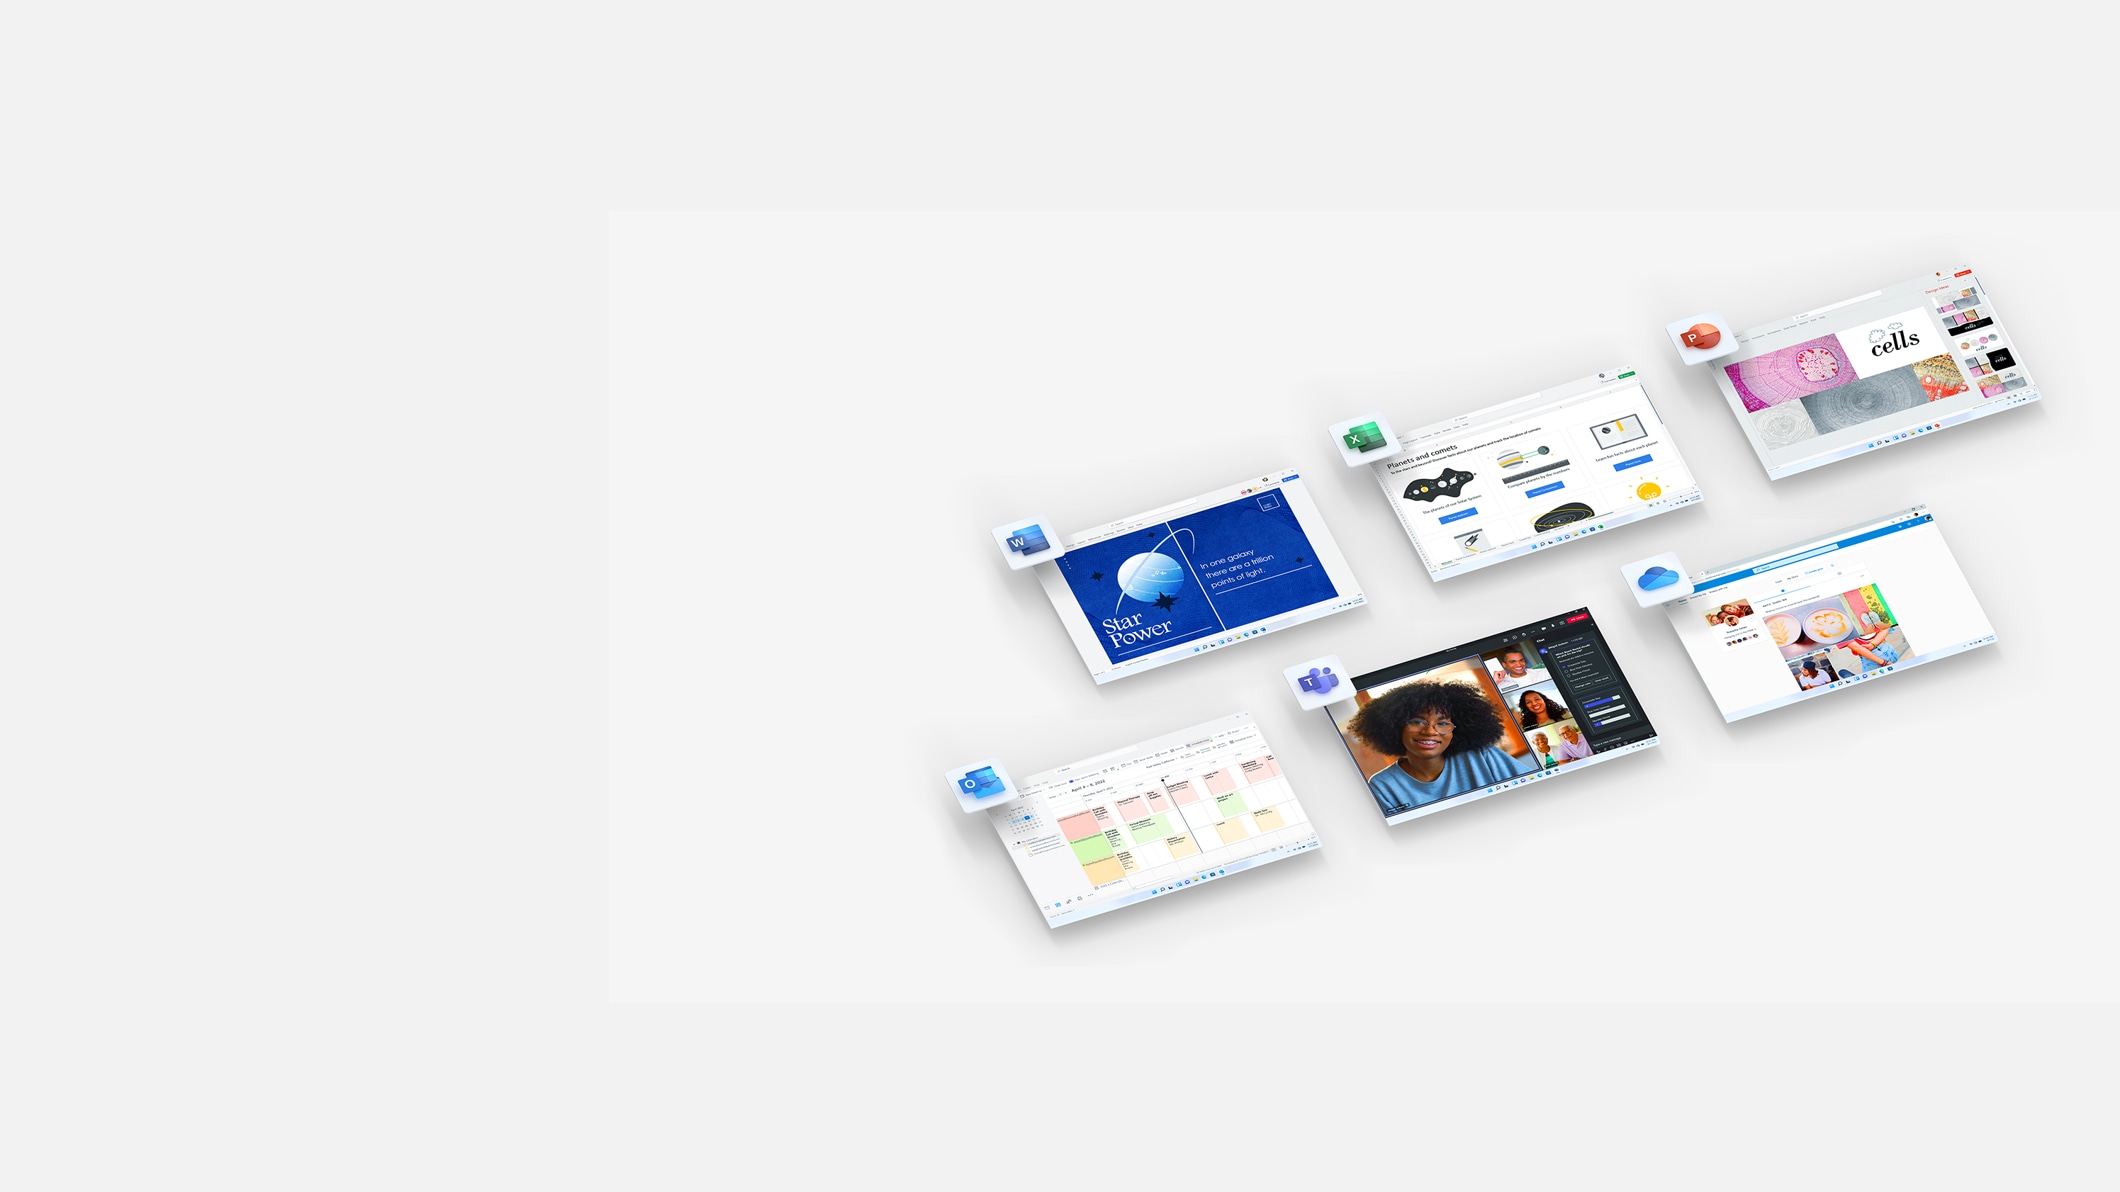 Schermi che visualizzano Microsoft OneDrive, Excel, Word, PowerPoint e Outlook.